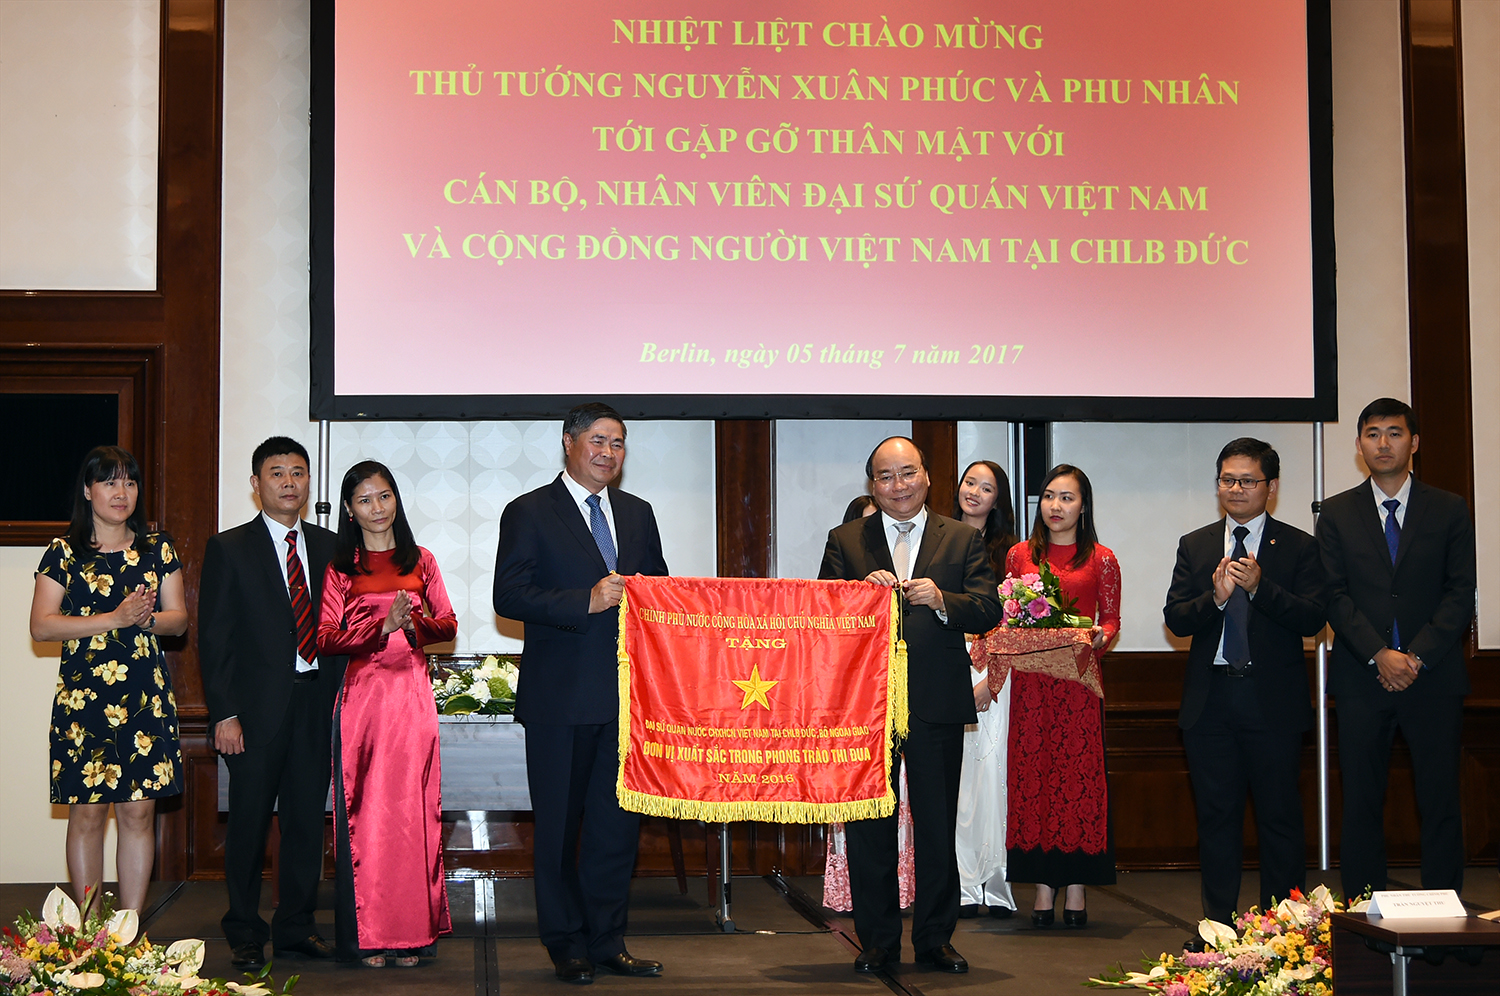 Thủ tướng Nguyễn Xuân Phúc tặng cờ thi đua của Chính phủ cho Đại sứ quán Việt Nam tại Berlin. Ảnh: VGP/Quang Hiếu